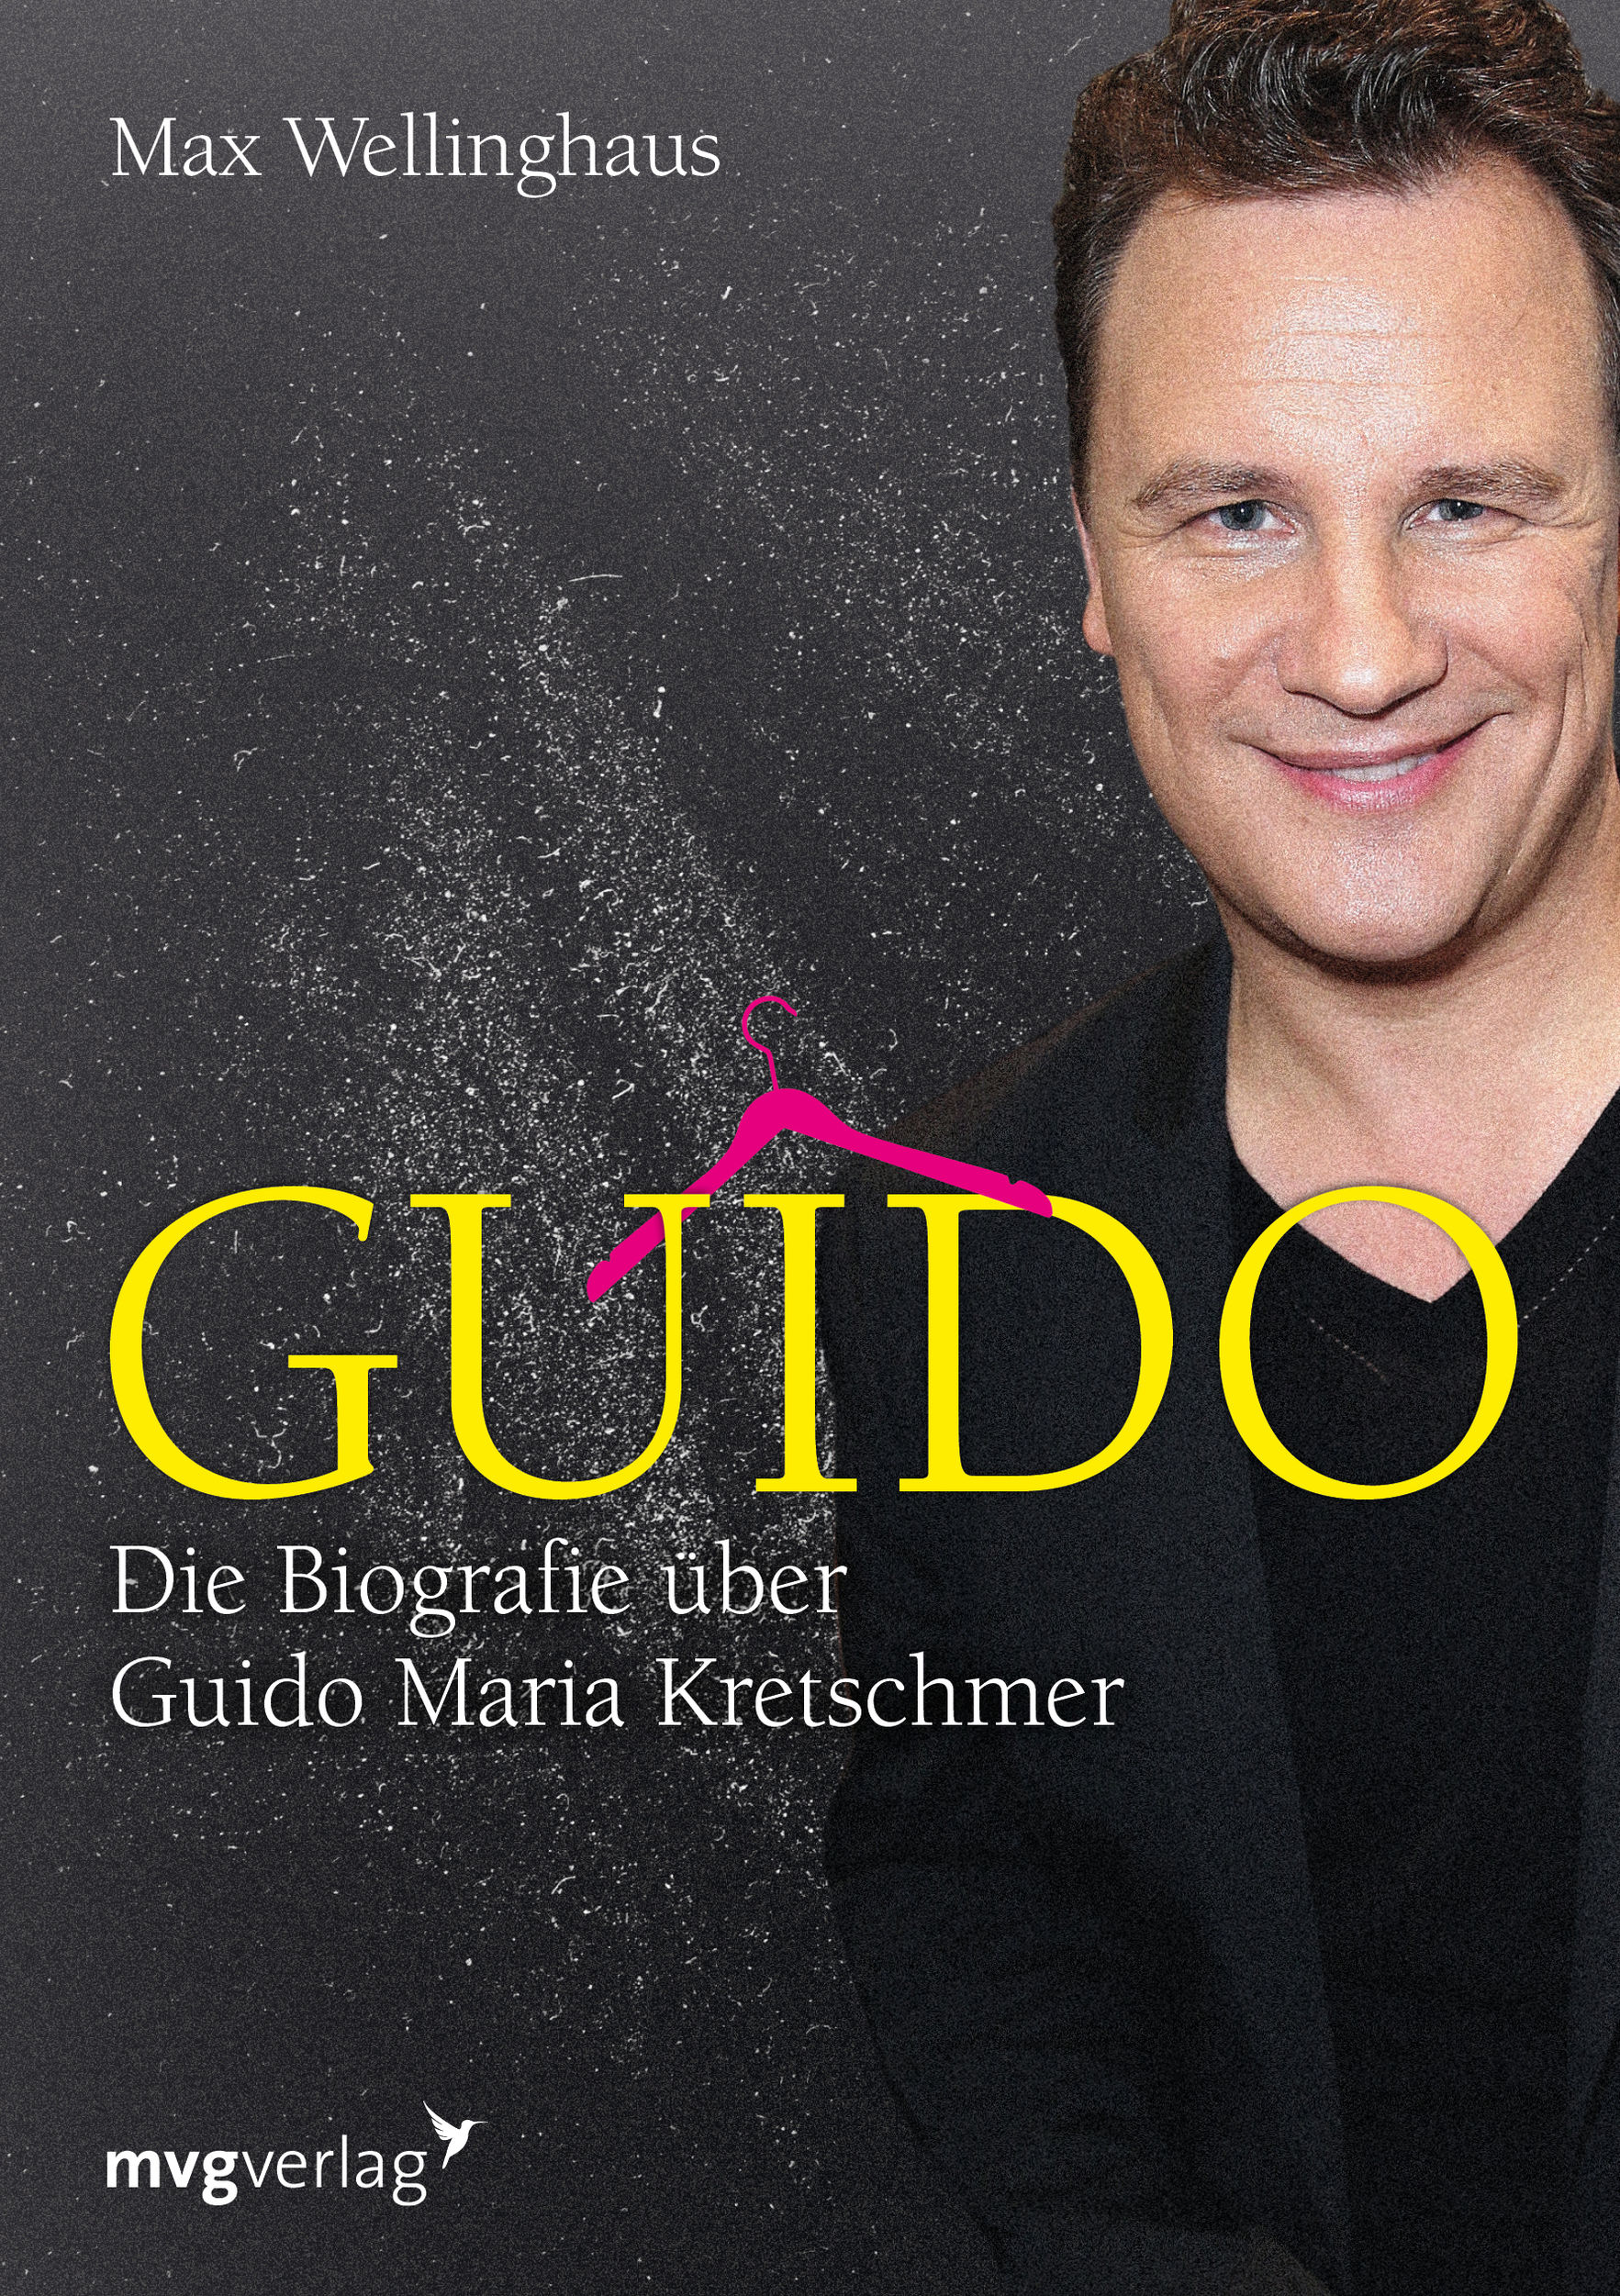 Guido Buch von Max Wellinghaus versandkostenfrei bestellen - Weltbild.de